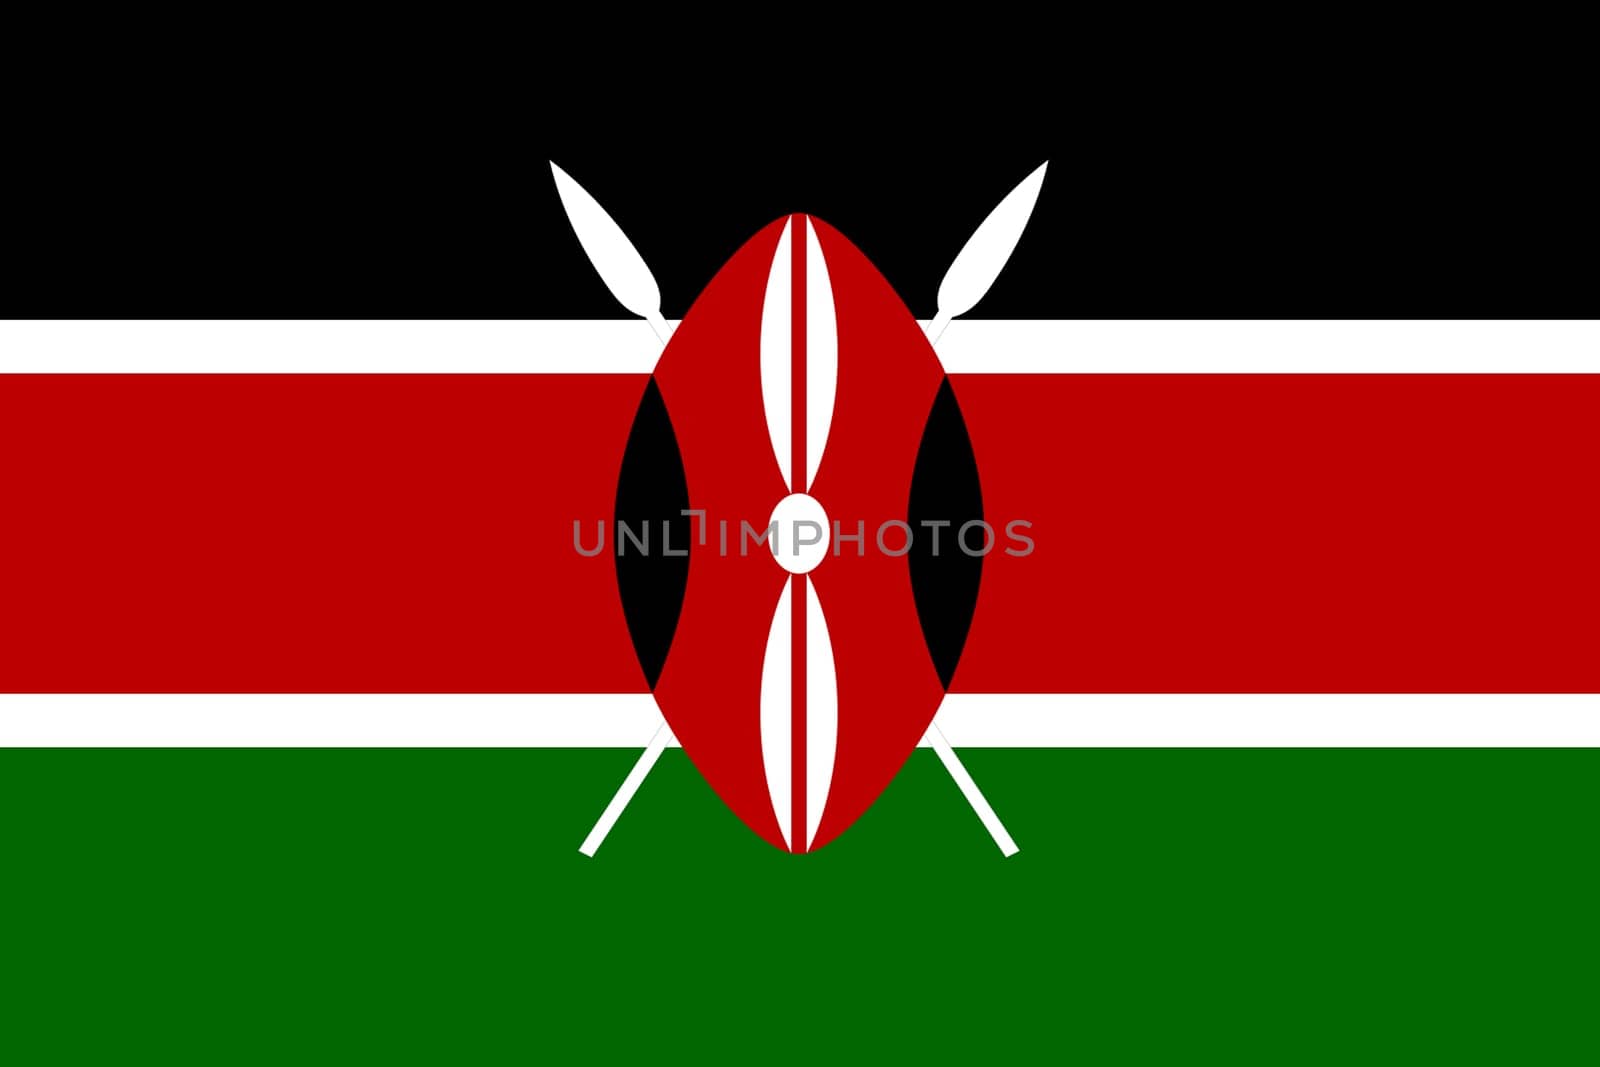 Kenya flag background illustration large file by VivacityImages